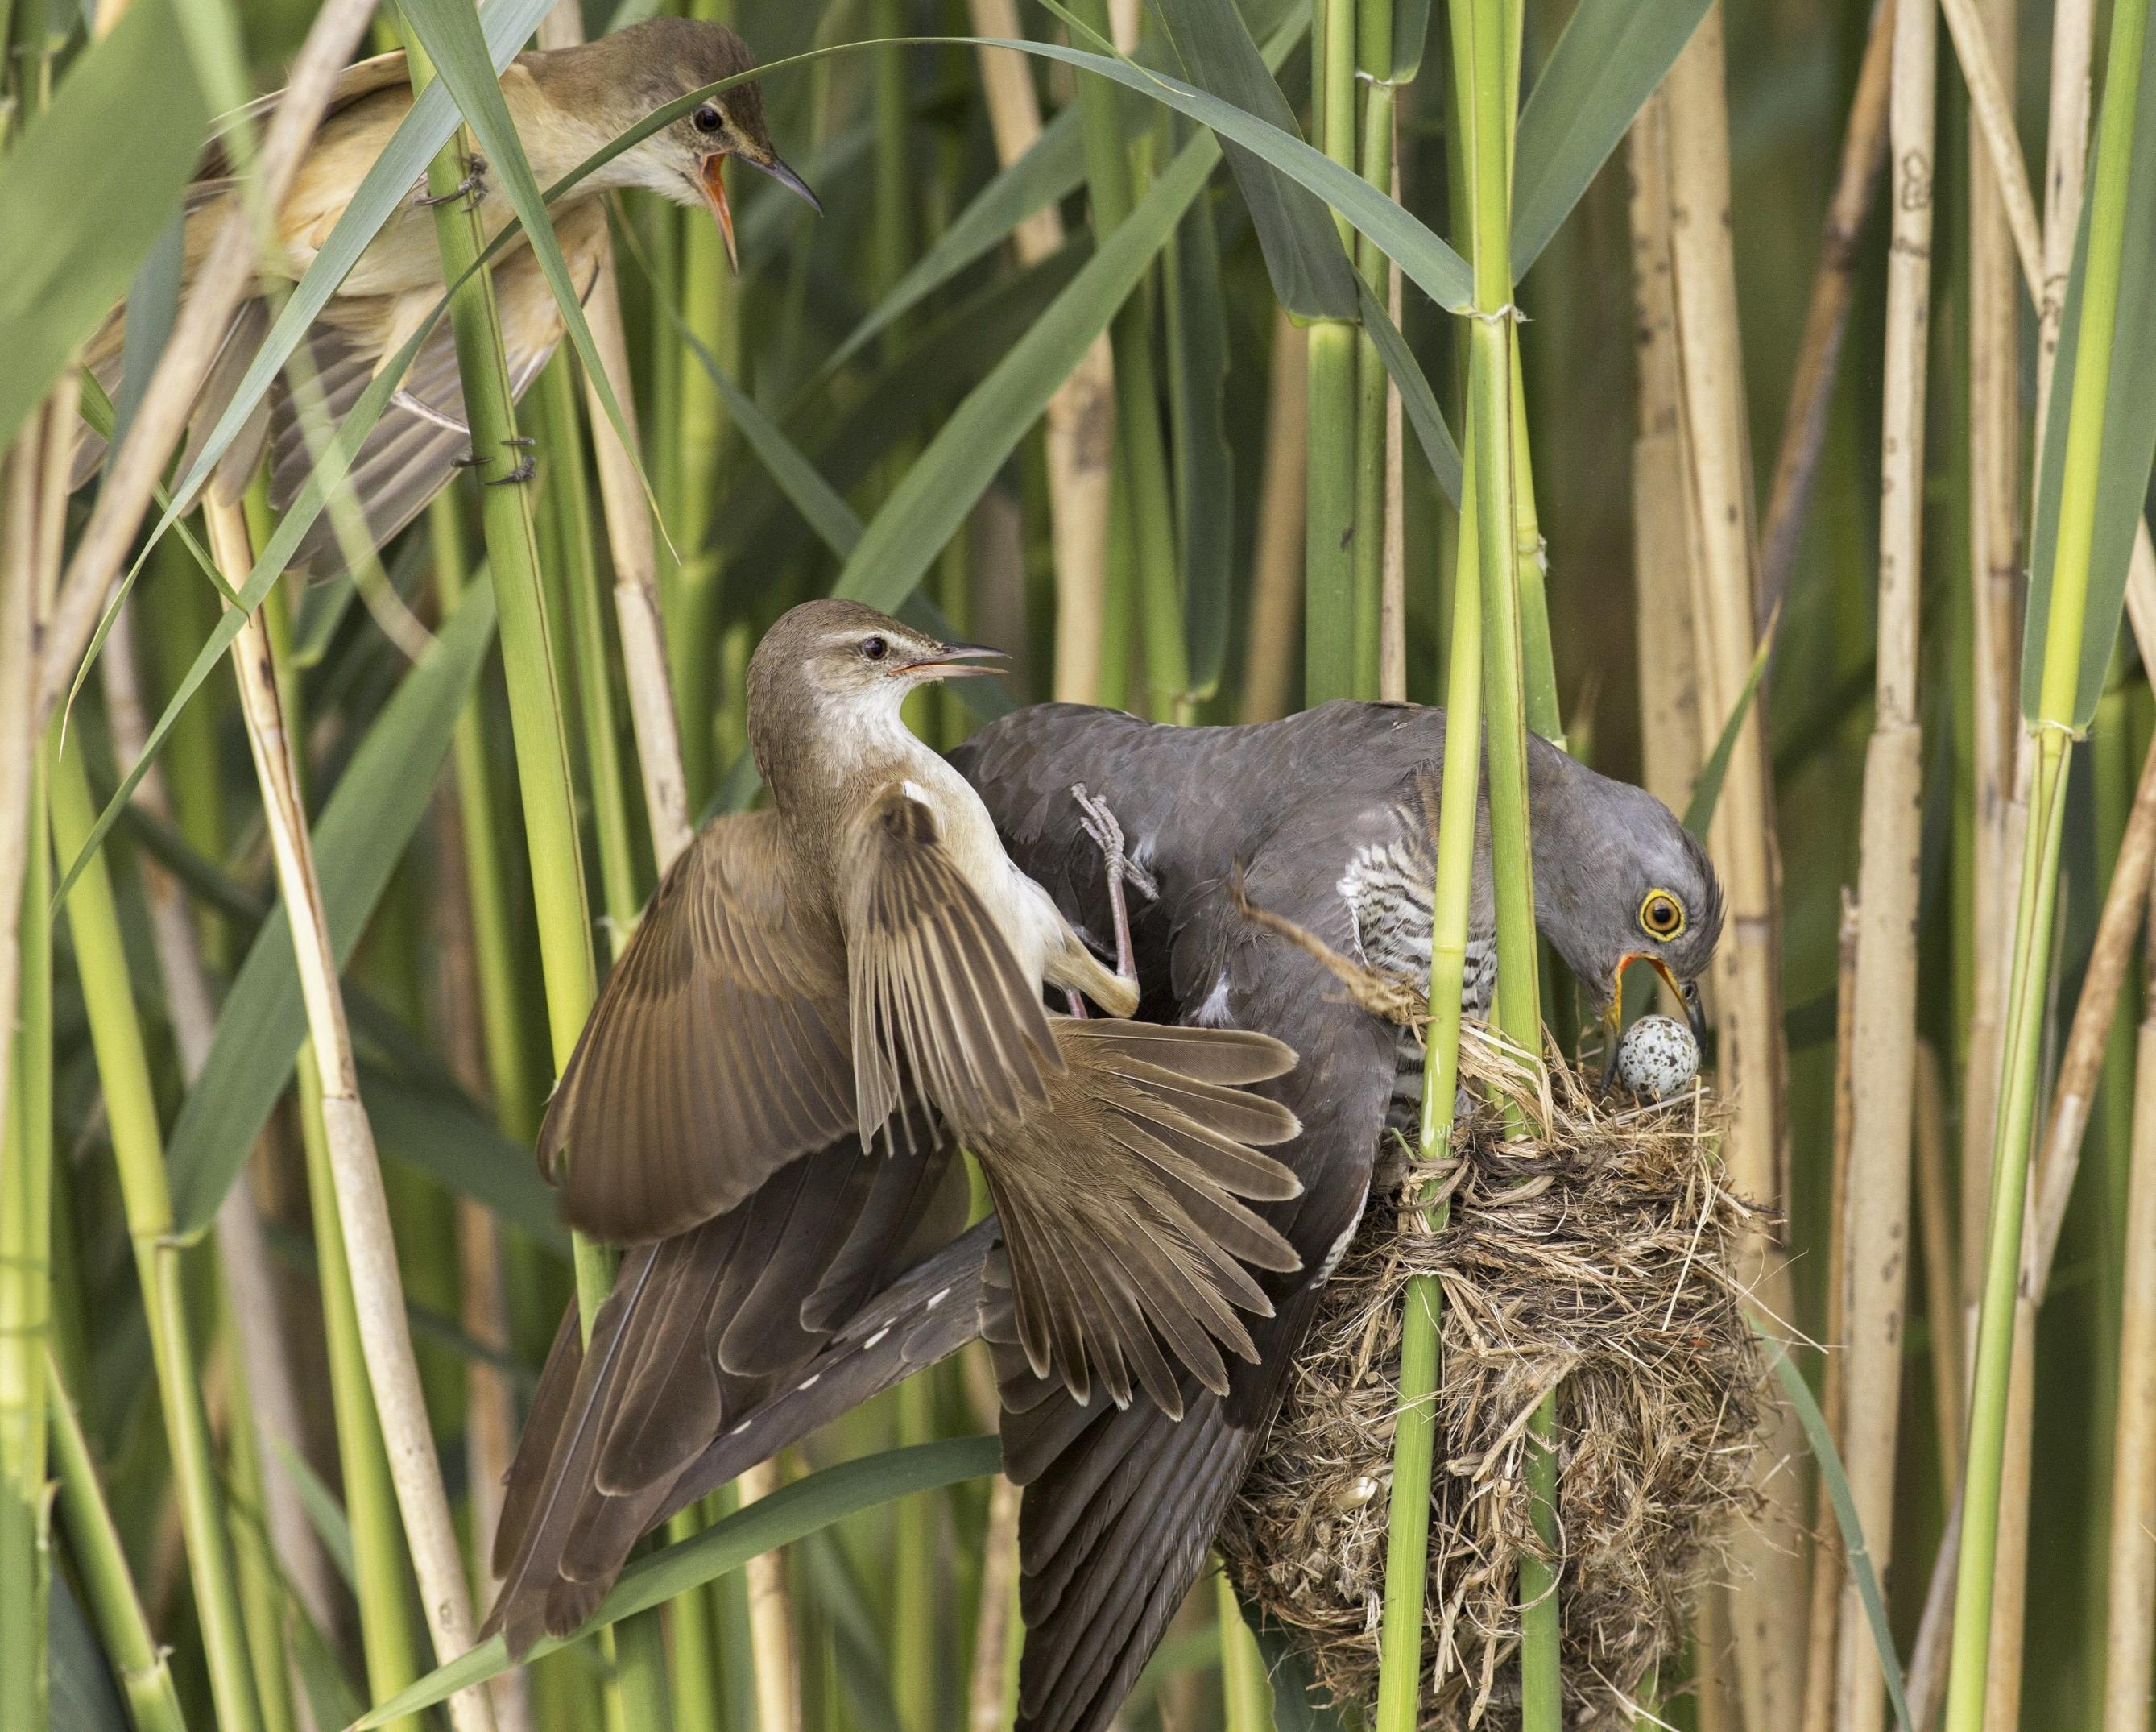 Das Bild zeigt einen entscheidenden Moment im Leben des Kuckucks, wenn er die anderen Eier aus dem Nest schiebt.